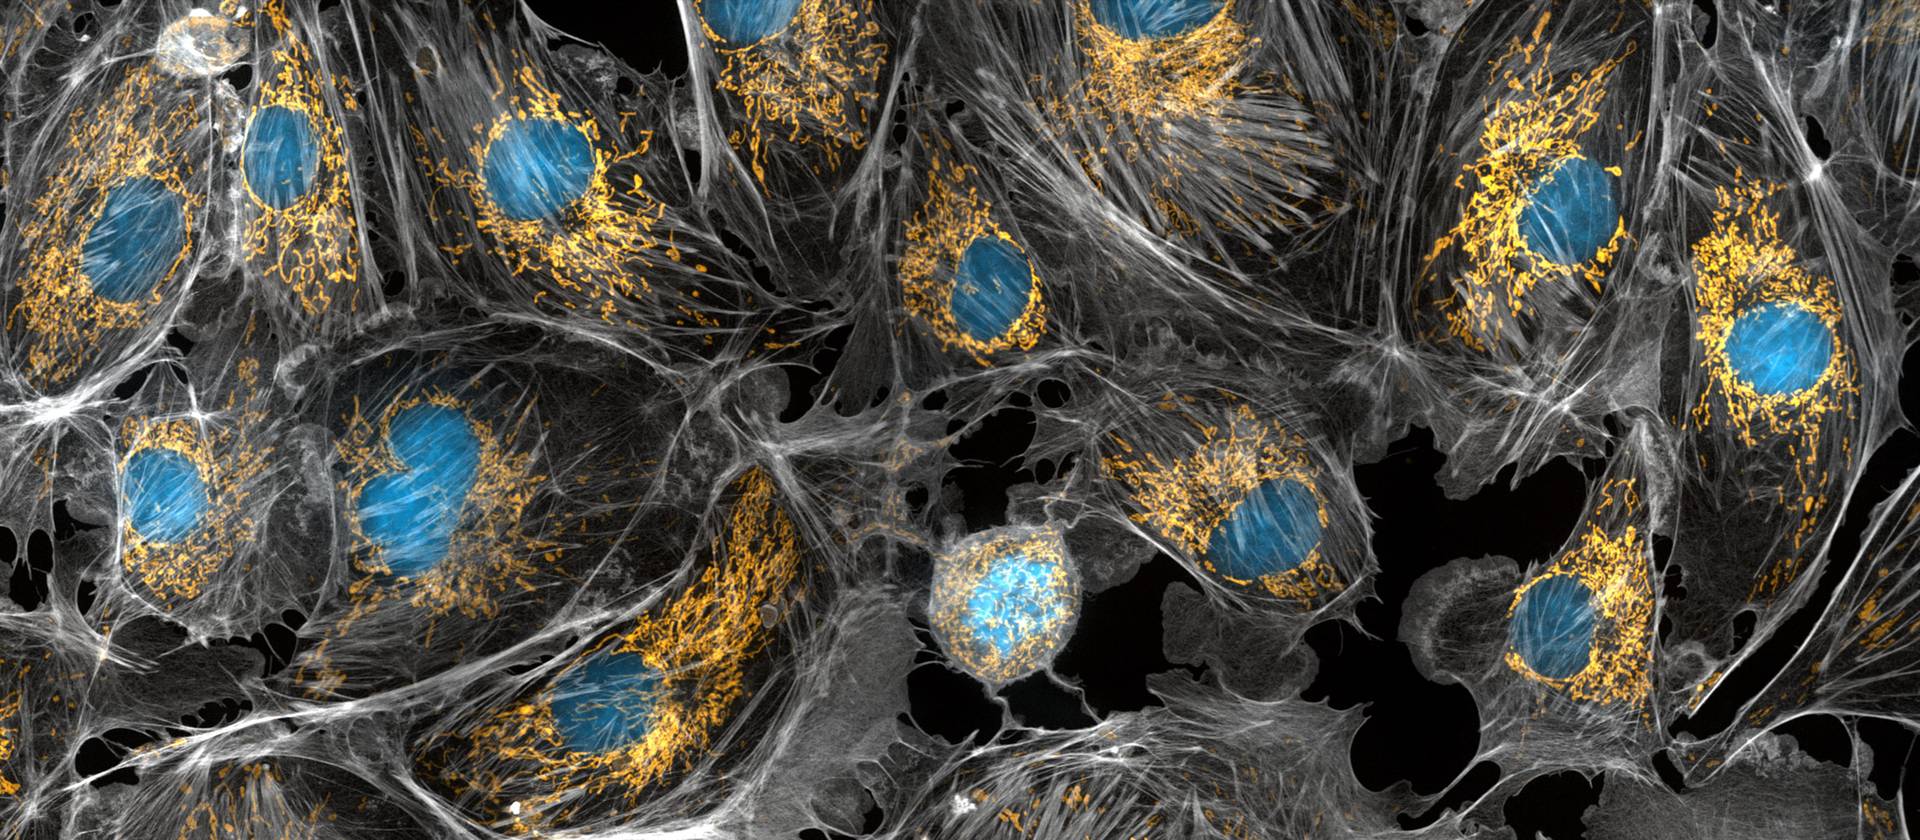 Фотография коровьих клеток, сделанная под микроскопом. Митохондрии окрашены в ярко-желтый цвет. Большие синие точки — это ядра клеток, а серая паутина — их цитоскелет.